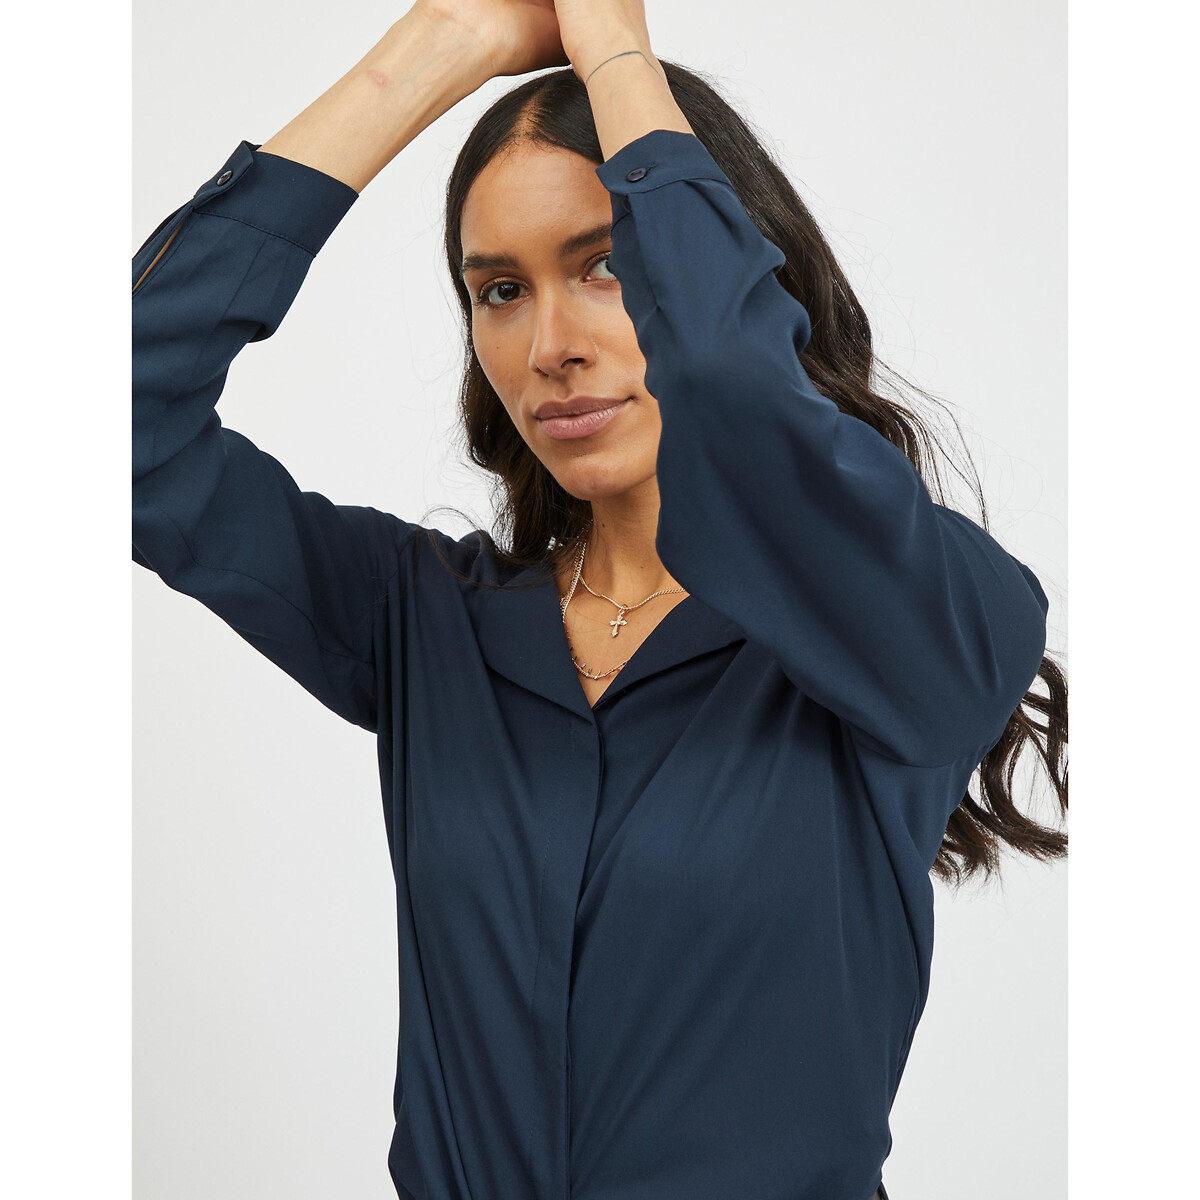 Блузка С V-образным вырезом и длинными рукавами XL синий LaRedoute, размер XL - фото 2